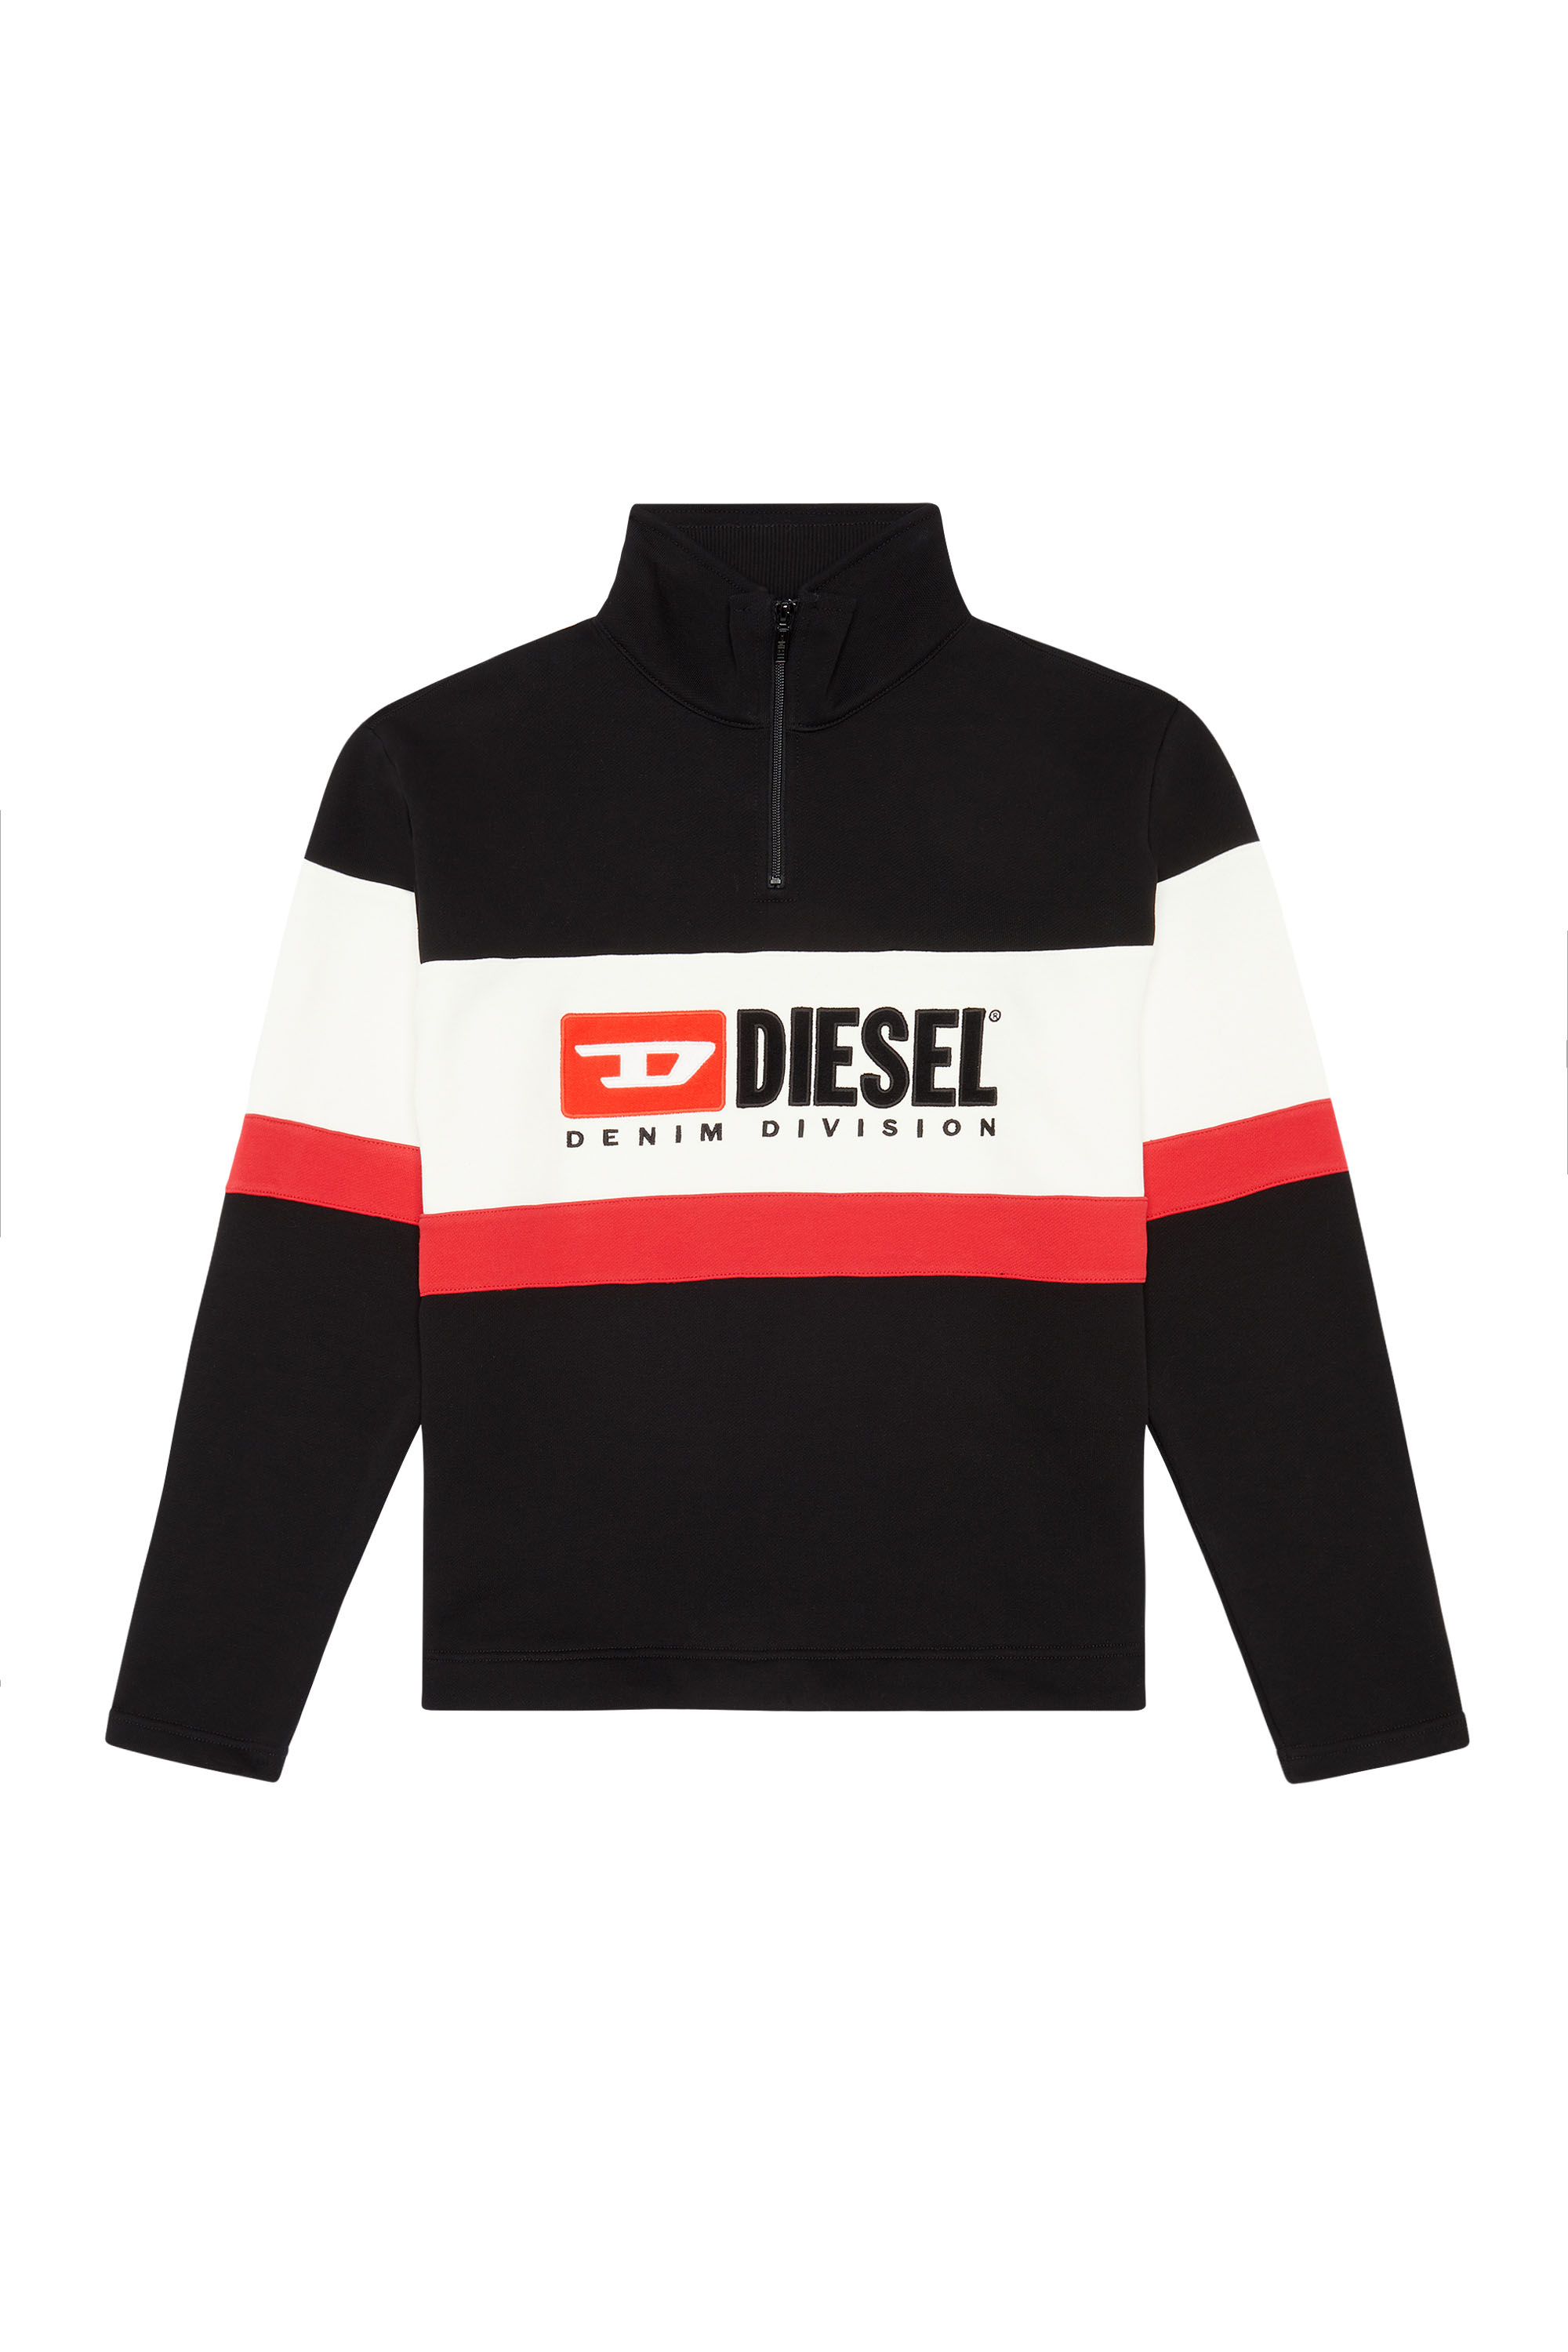 Diesel - S-SAINT-DIVISION, Schwarz - Image 1